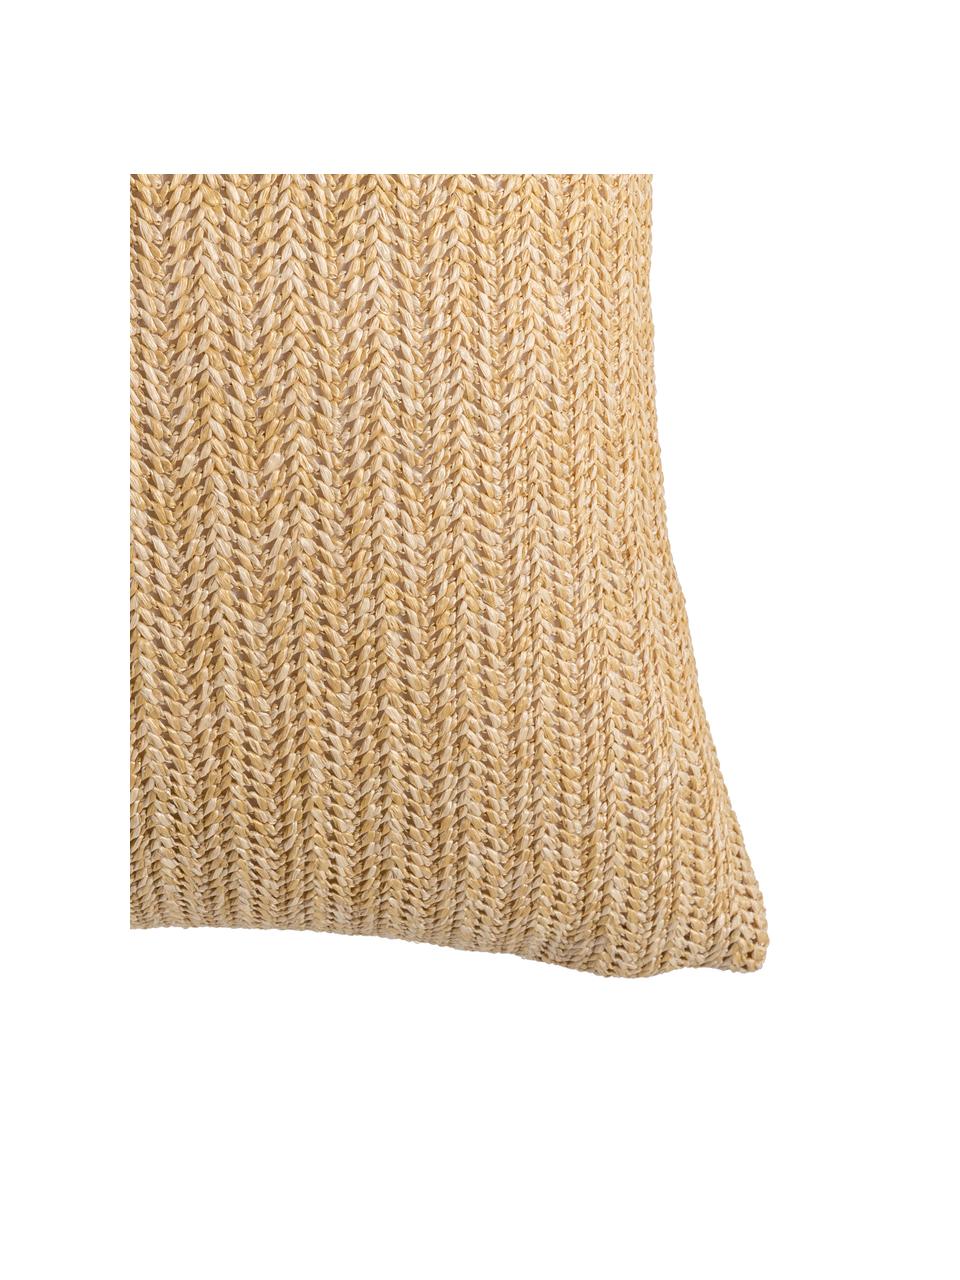 Cojín de exterior Knitted, con relleno, Tapizado: 85% polipropileno, 15% ny, Beige, negro, An 43 x L 43 cm